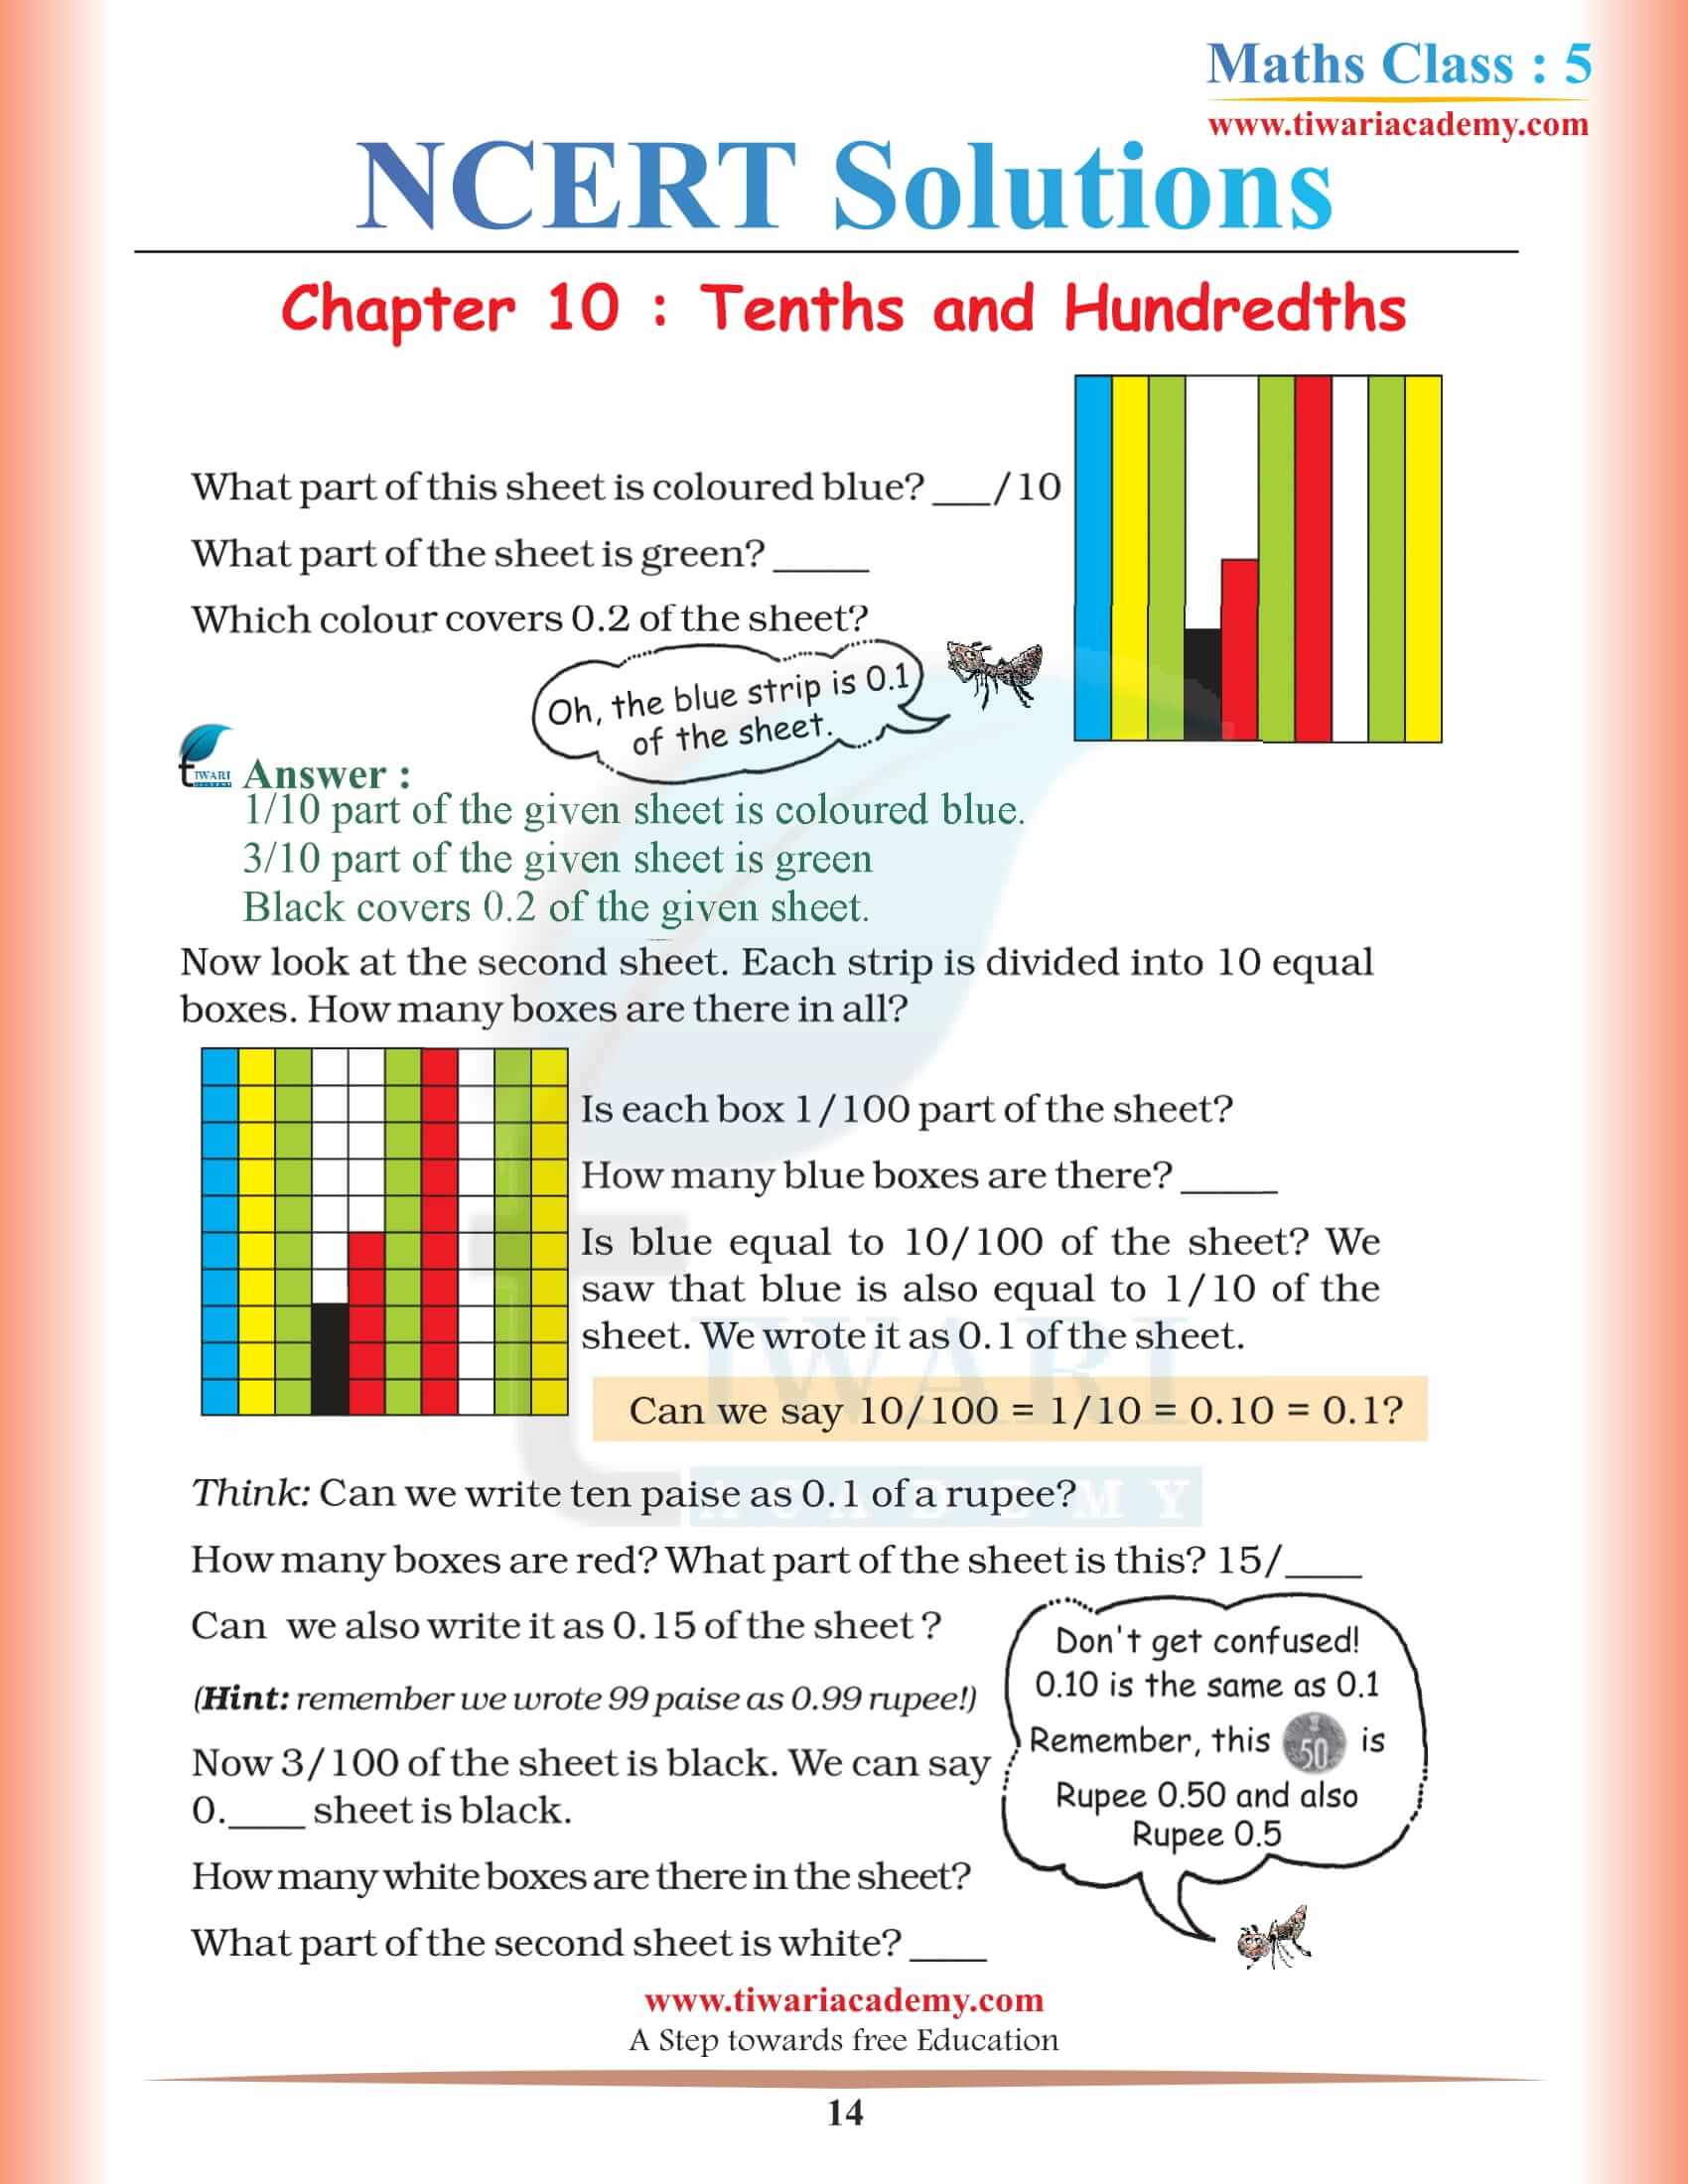 Class 5 Maths NCERT Chapter 10 Solution free PDF